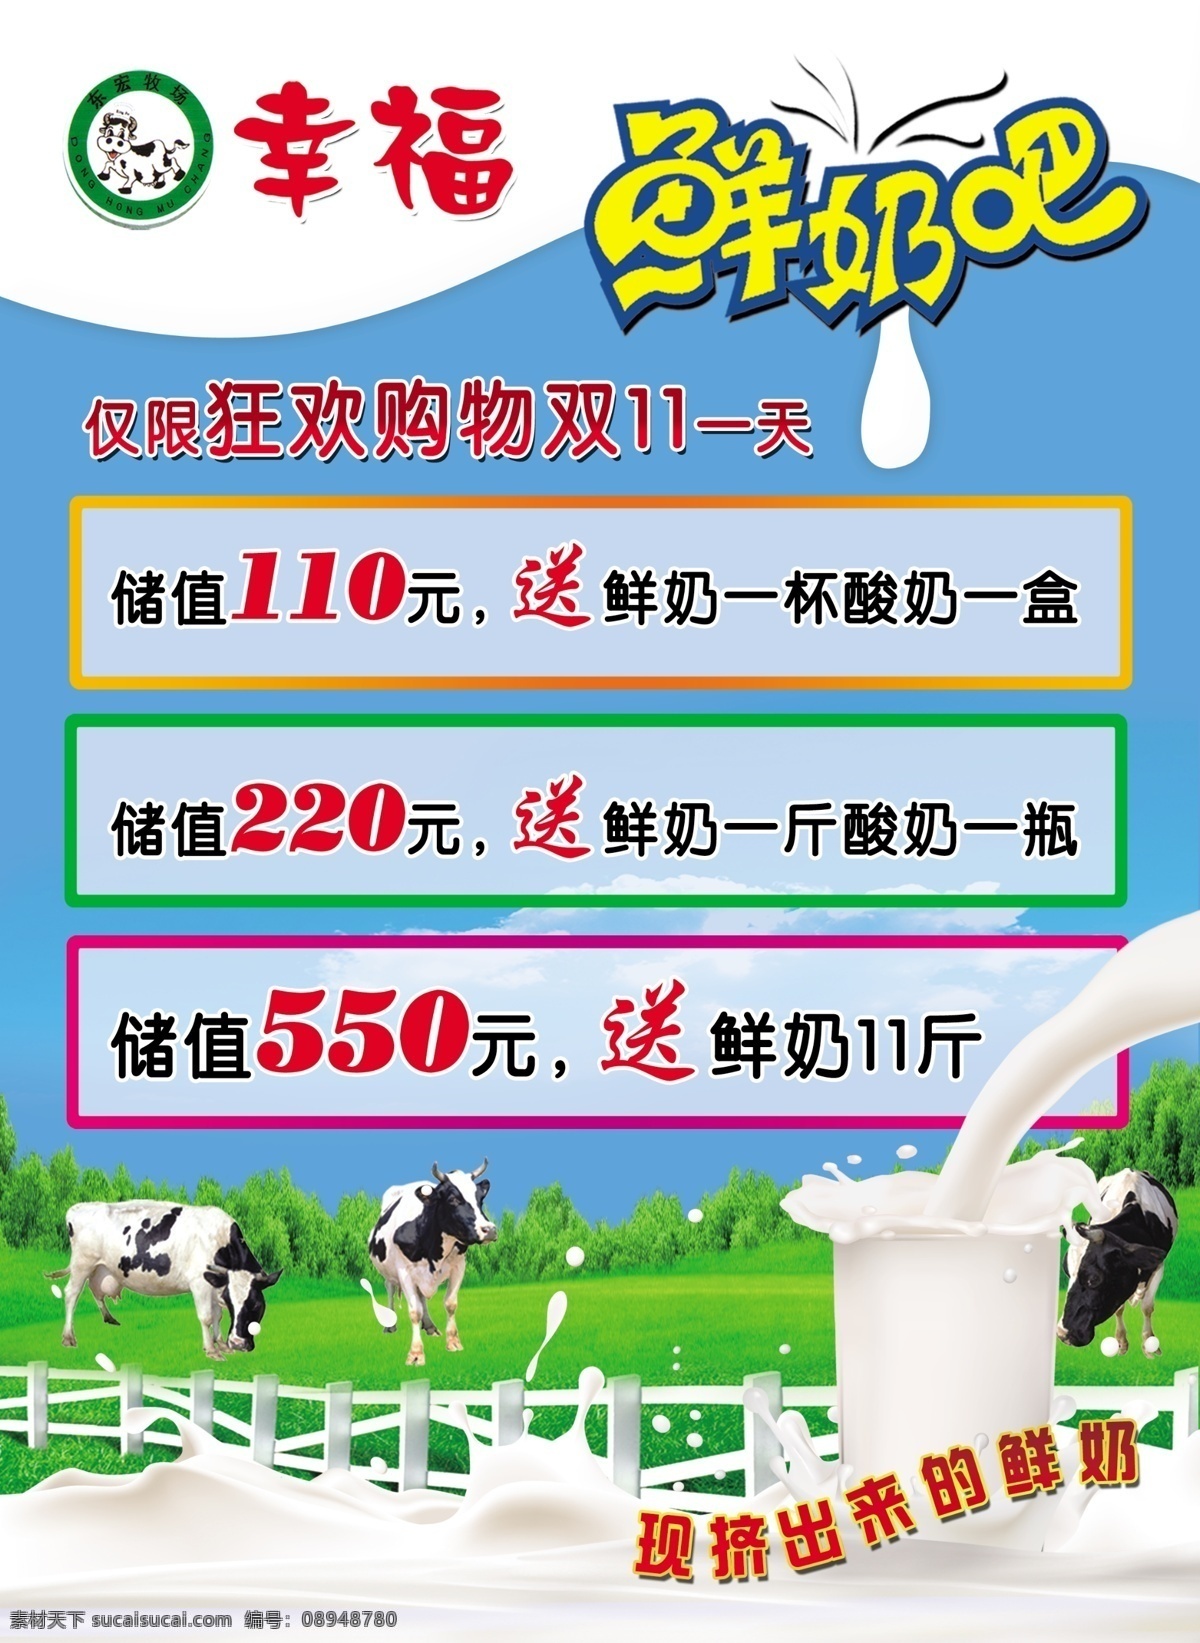 分层 边框 蓝背景 绿草地 奶牛 鲜奶 源文件 幸福 宣传 广告 模板下载 图标 现 挤出 矢量图 其他矢量图